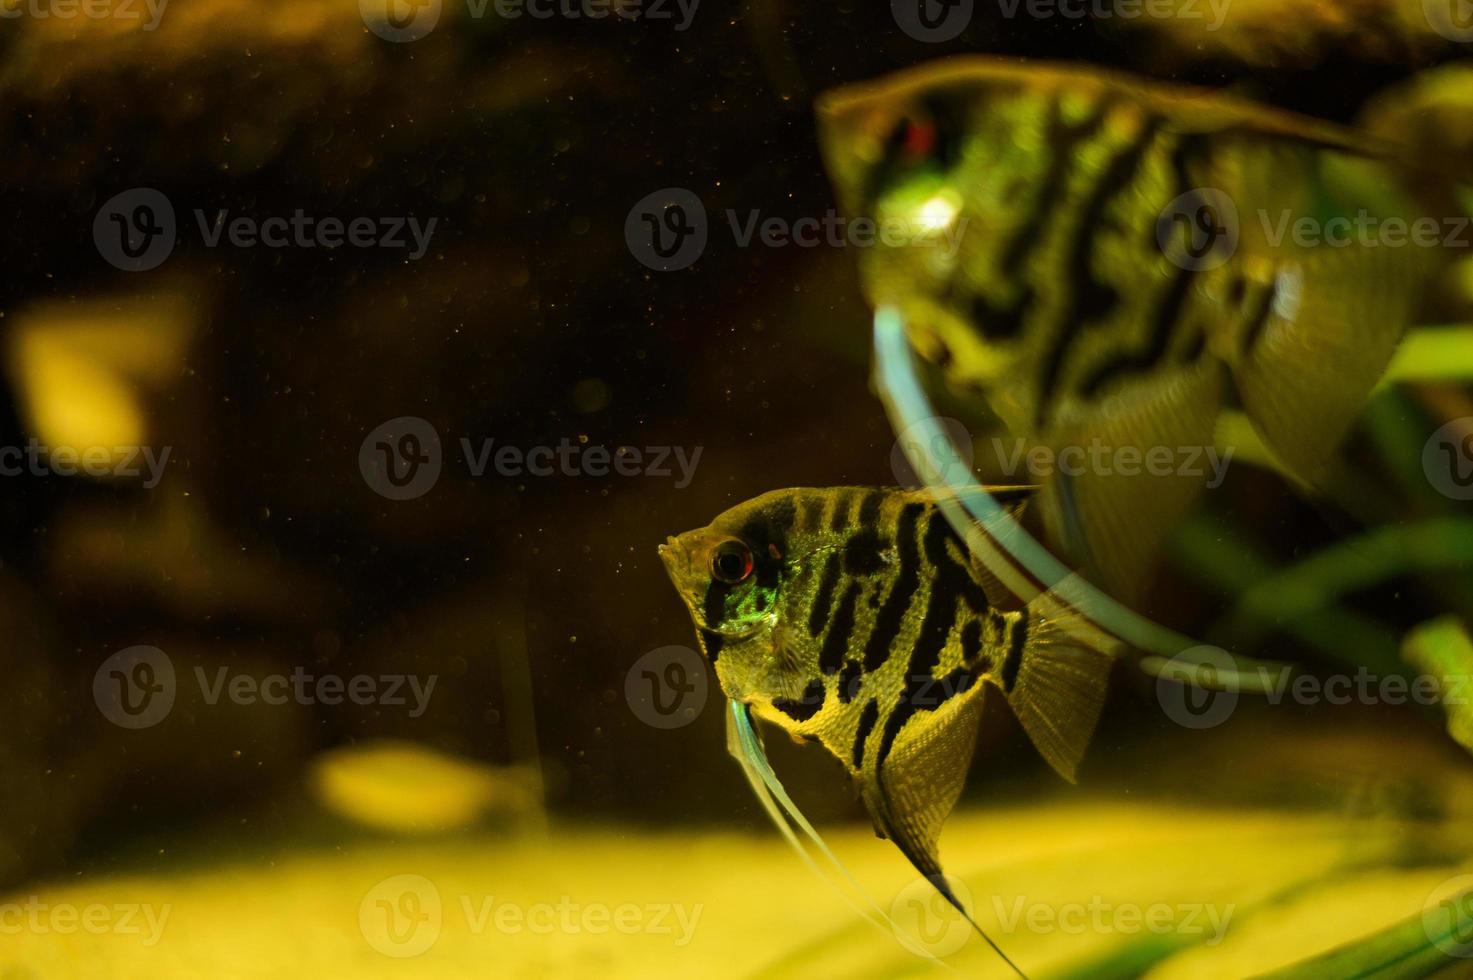 gemeenschappelijk scalairen in een aquarium. cichlid familie foto